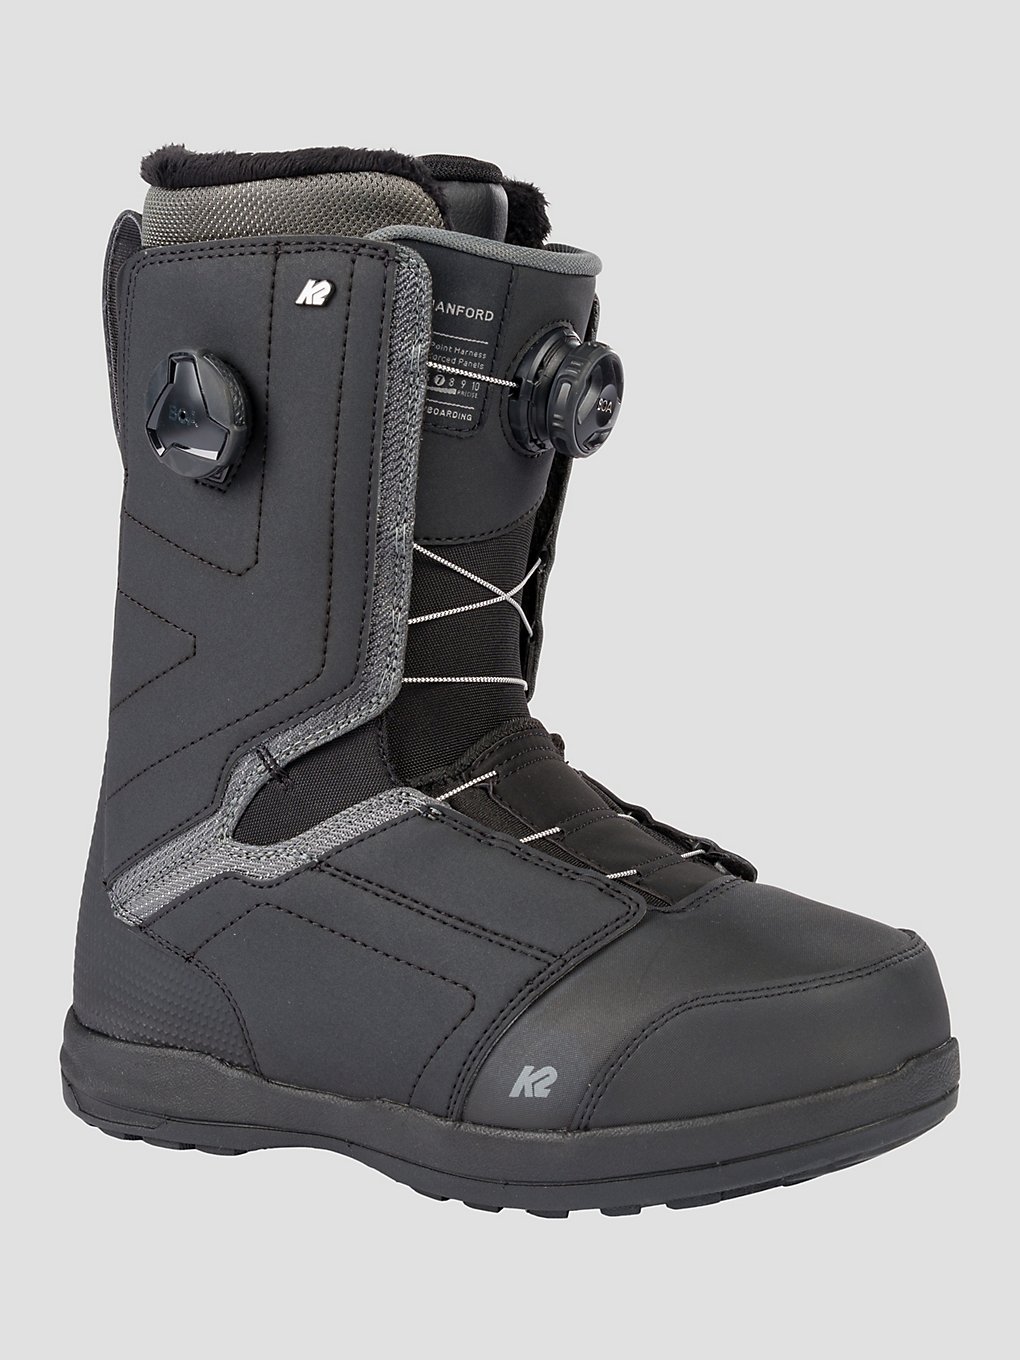 K2 Hanford 2023 Snowboard Boots black kaufen